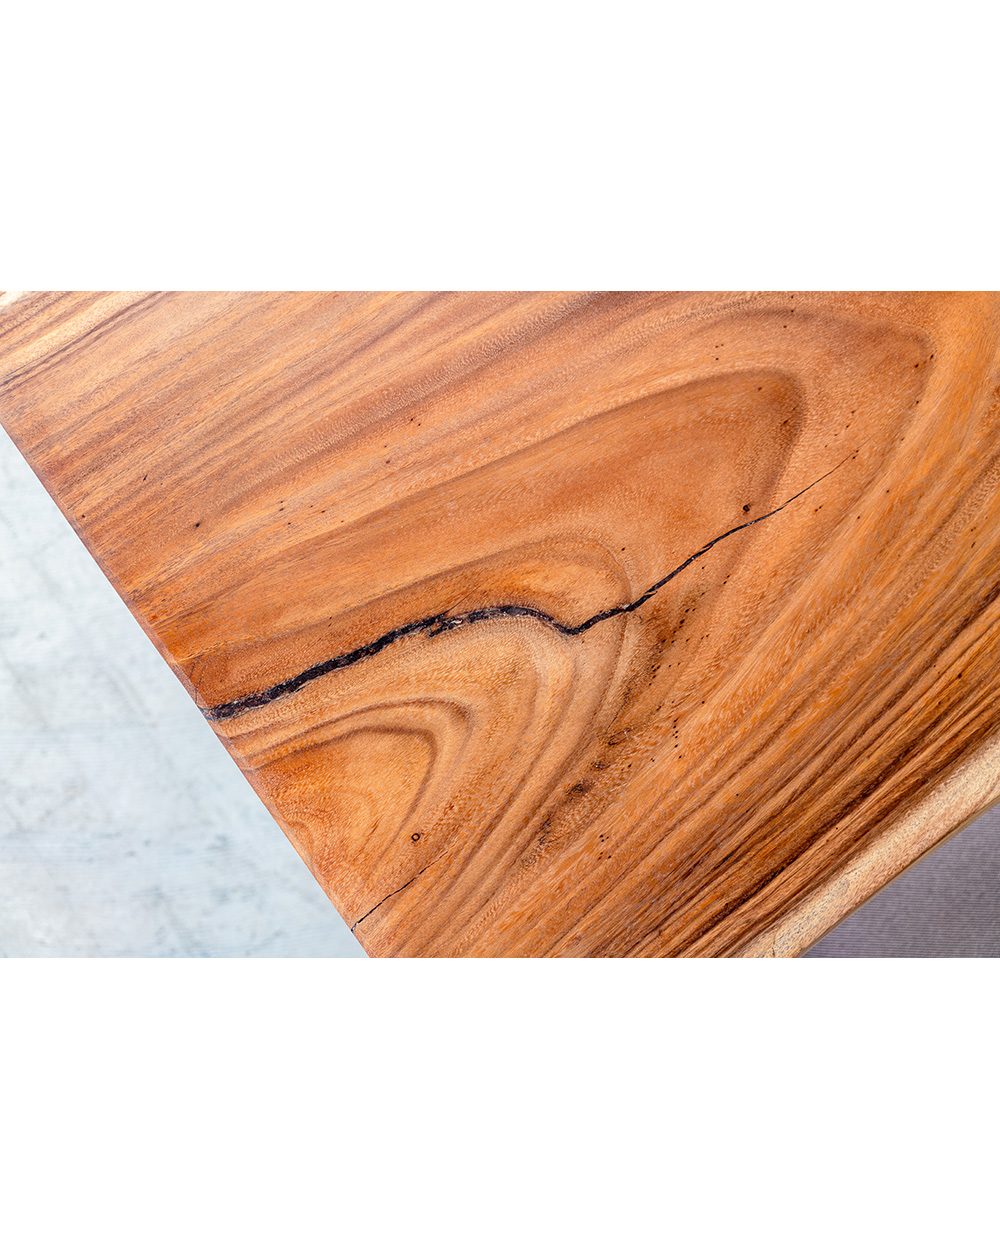 モンキーポッド一枚板デスク/オイル塗装(ウォールナット木製脚